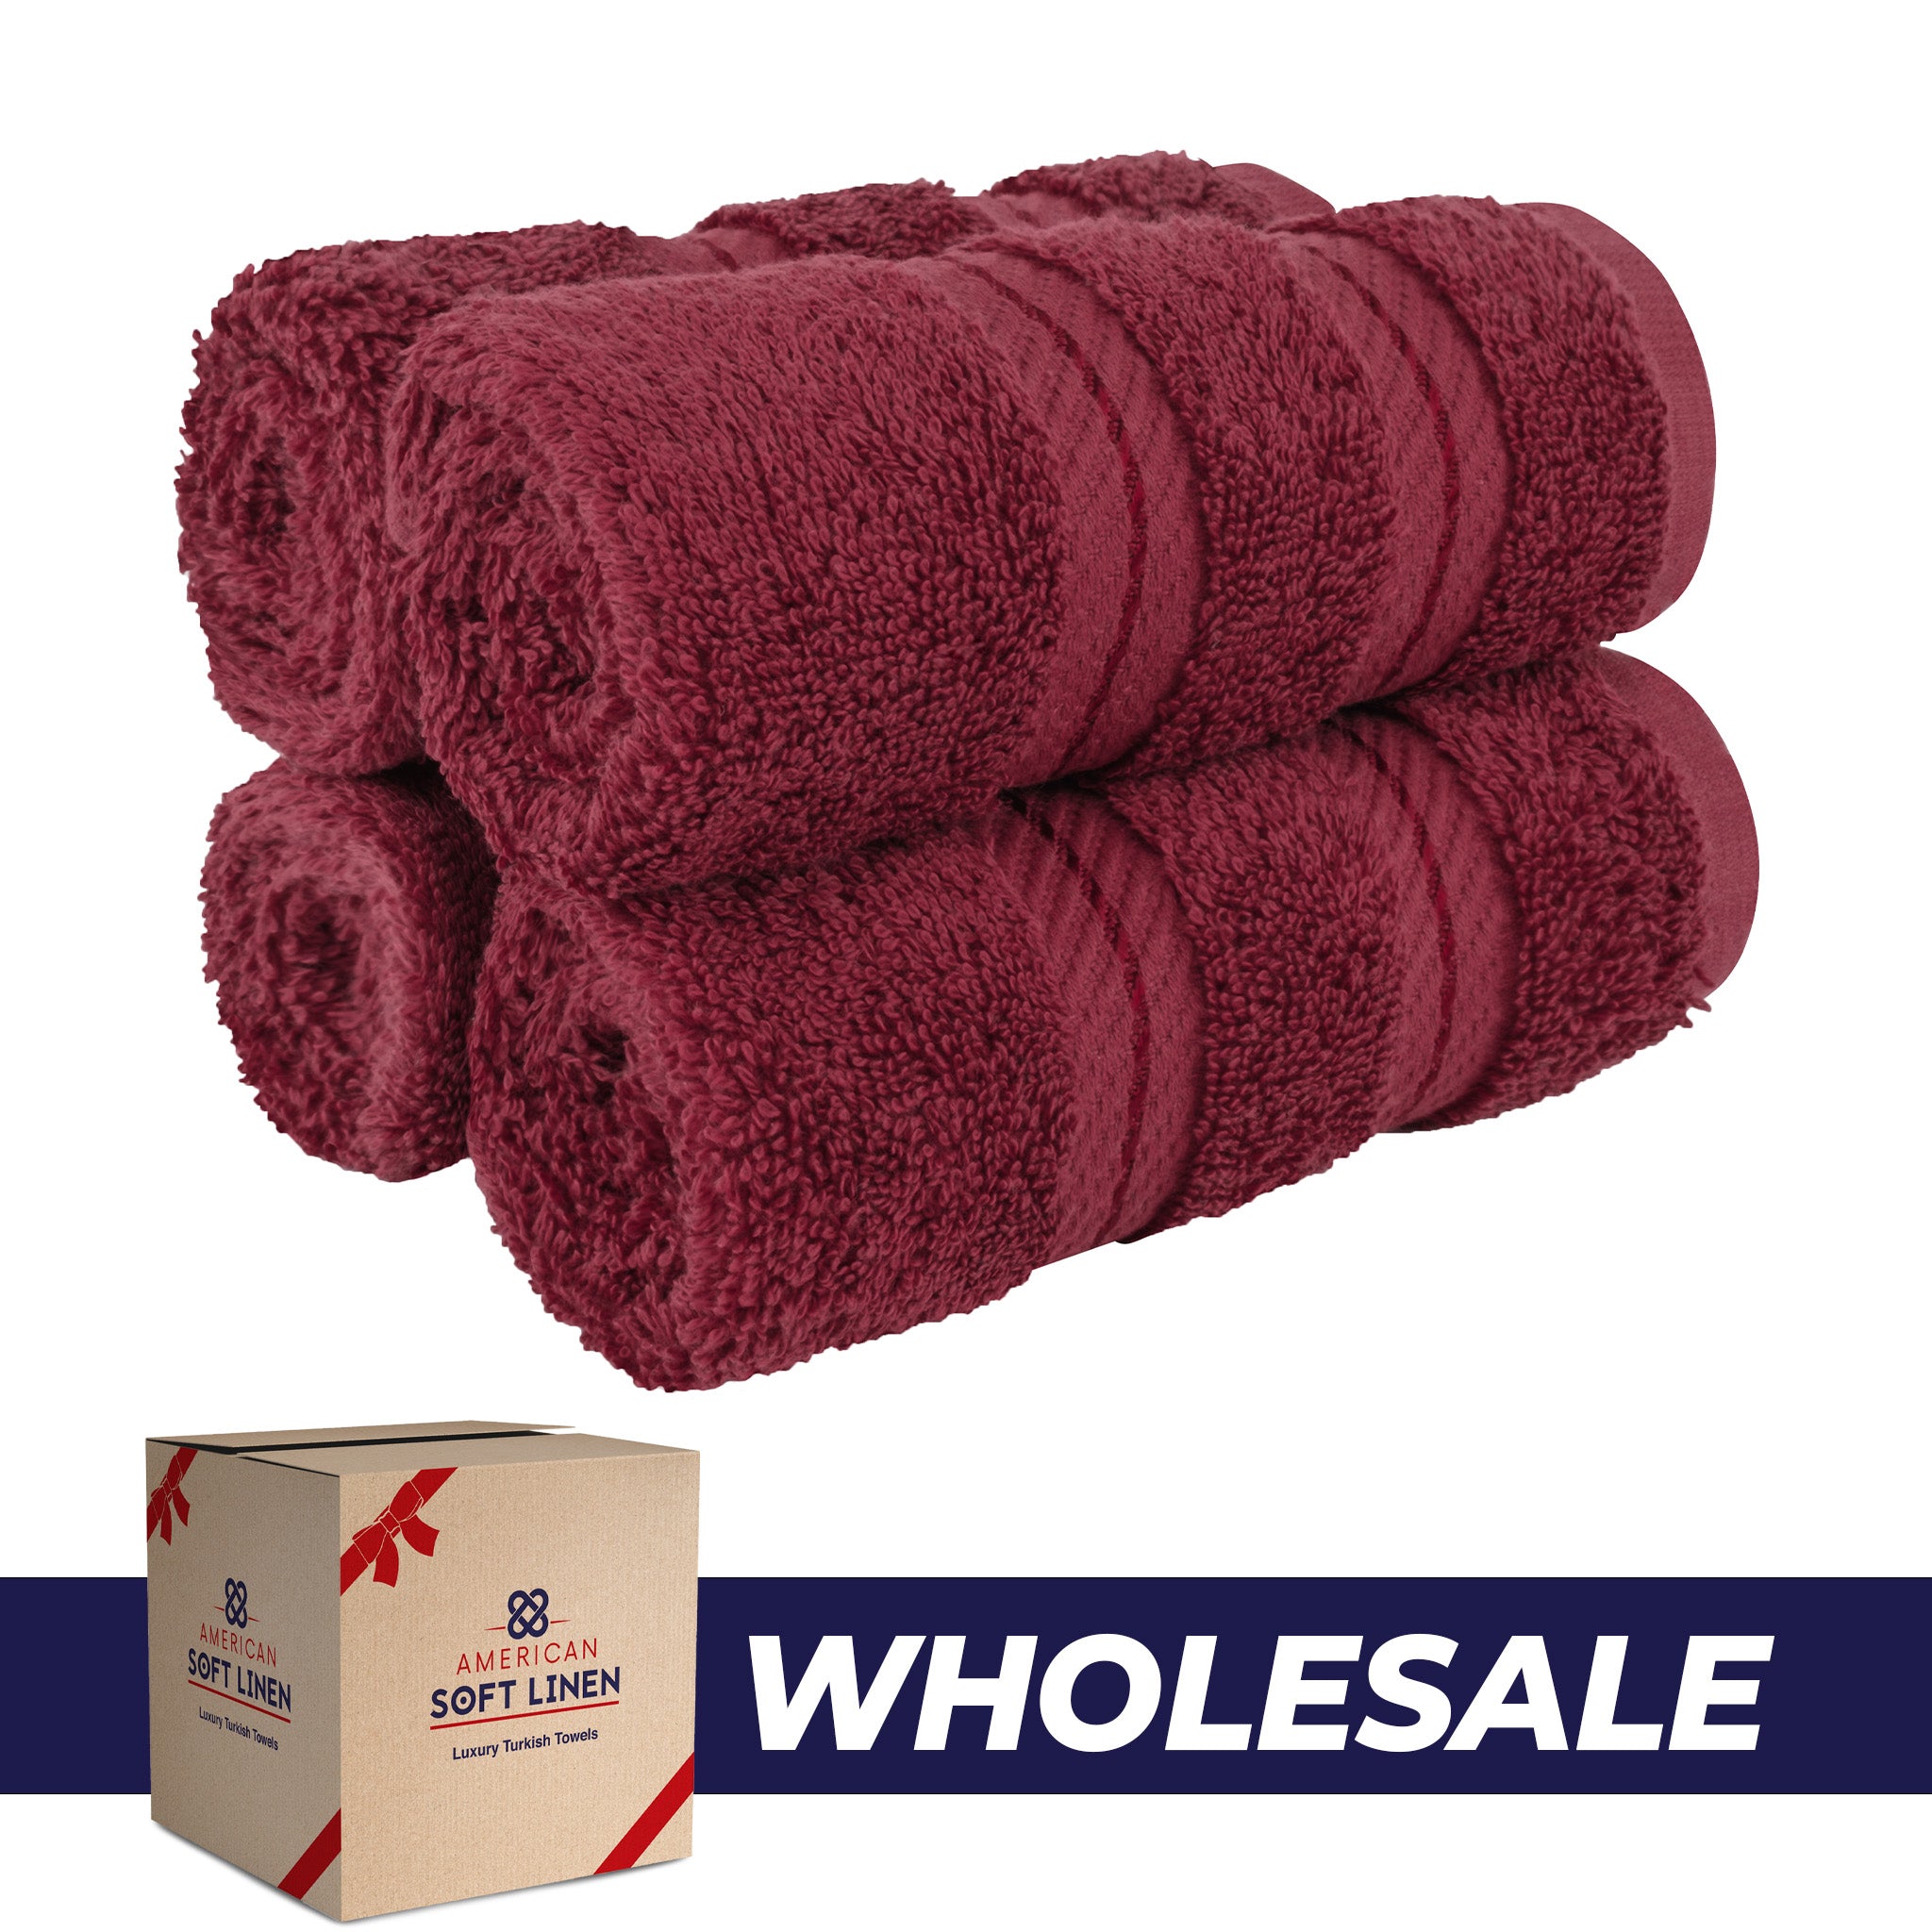  American Soft Linen 100% Turkish Cotton 4 Piece Washcloth Set - Wholesale - bordeaux-red-0